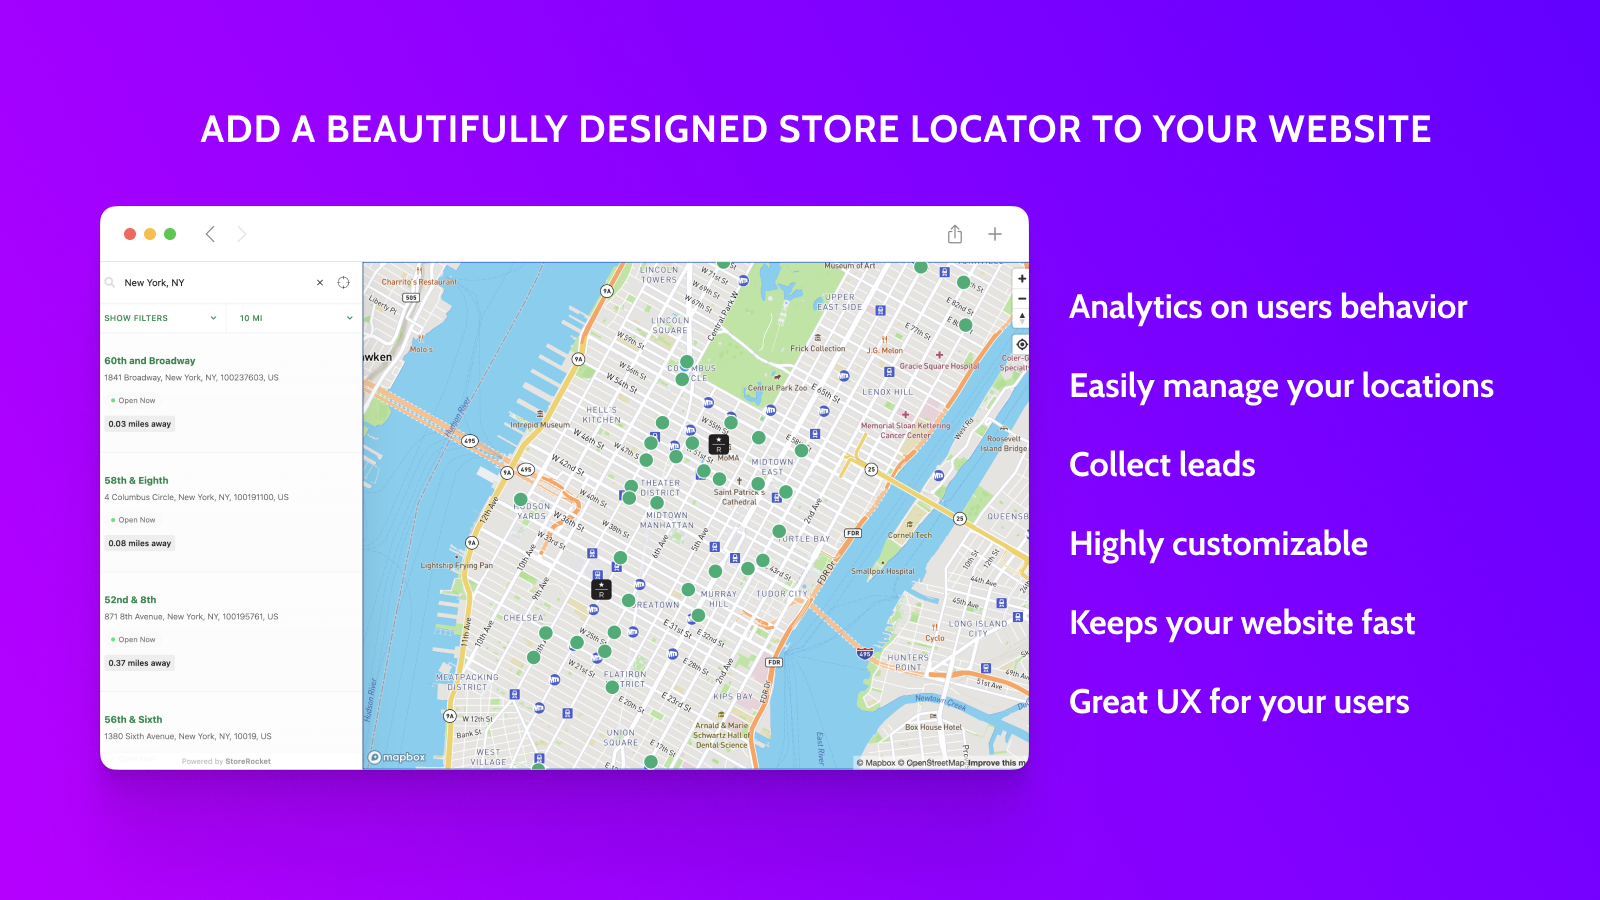 在您的网站上添加一个设计精美的商店定位器！